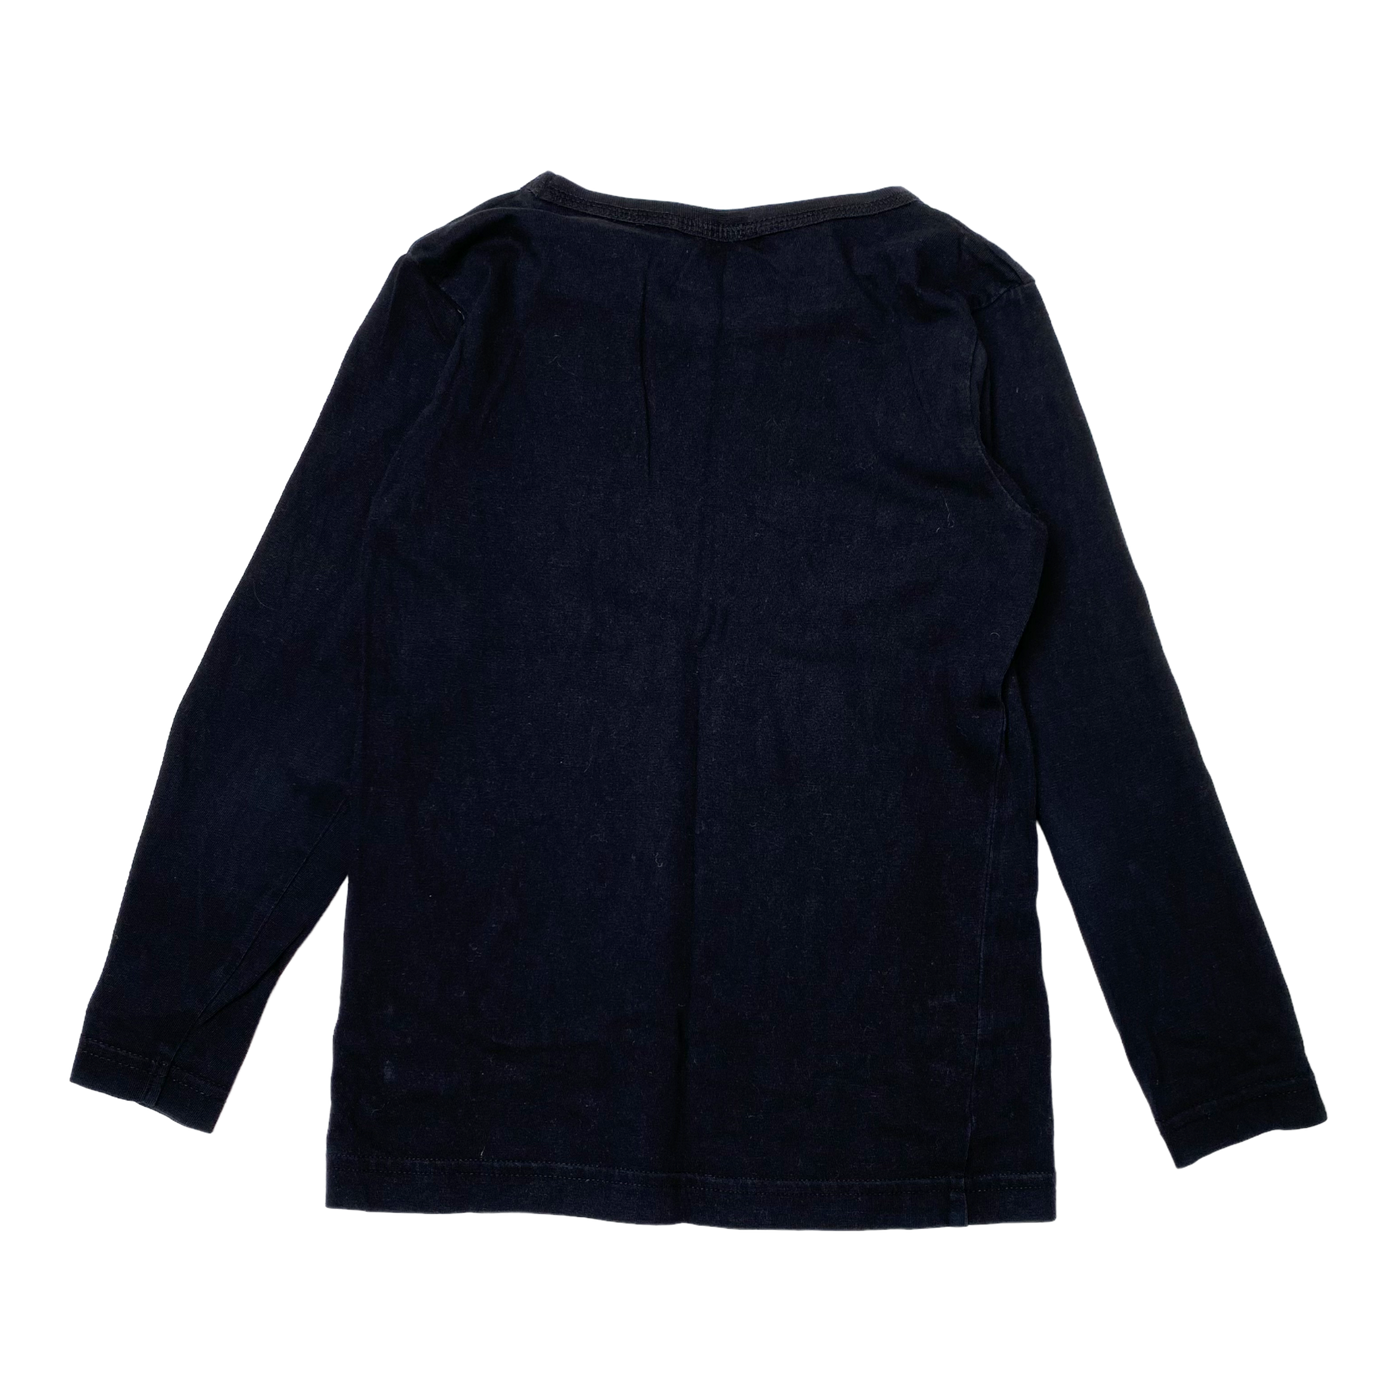 Mainio chimp shirt, black | 110/116cm